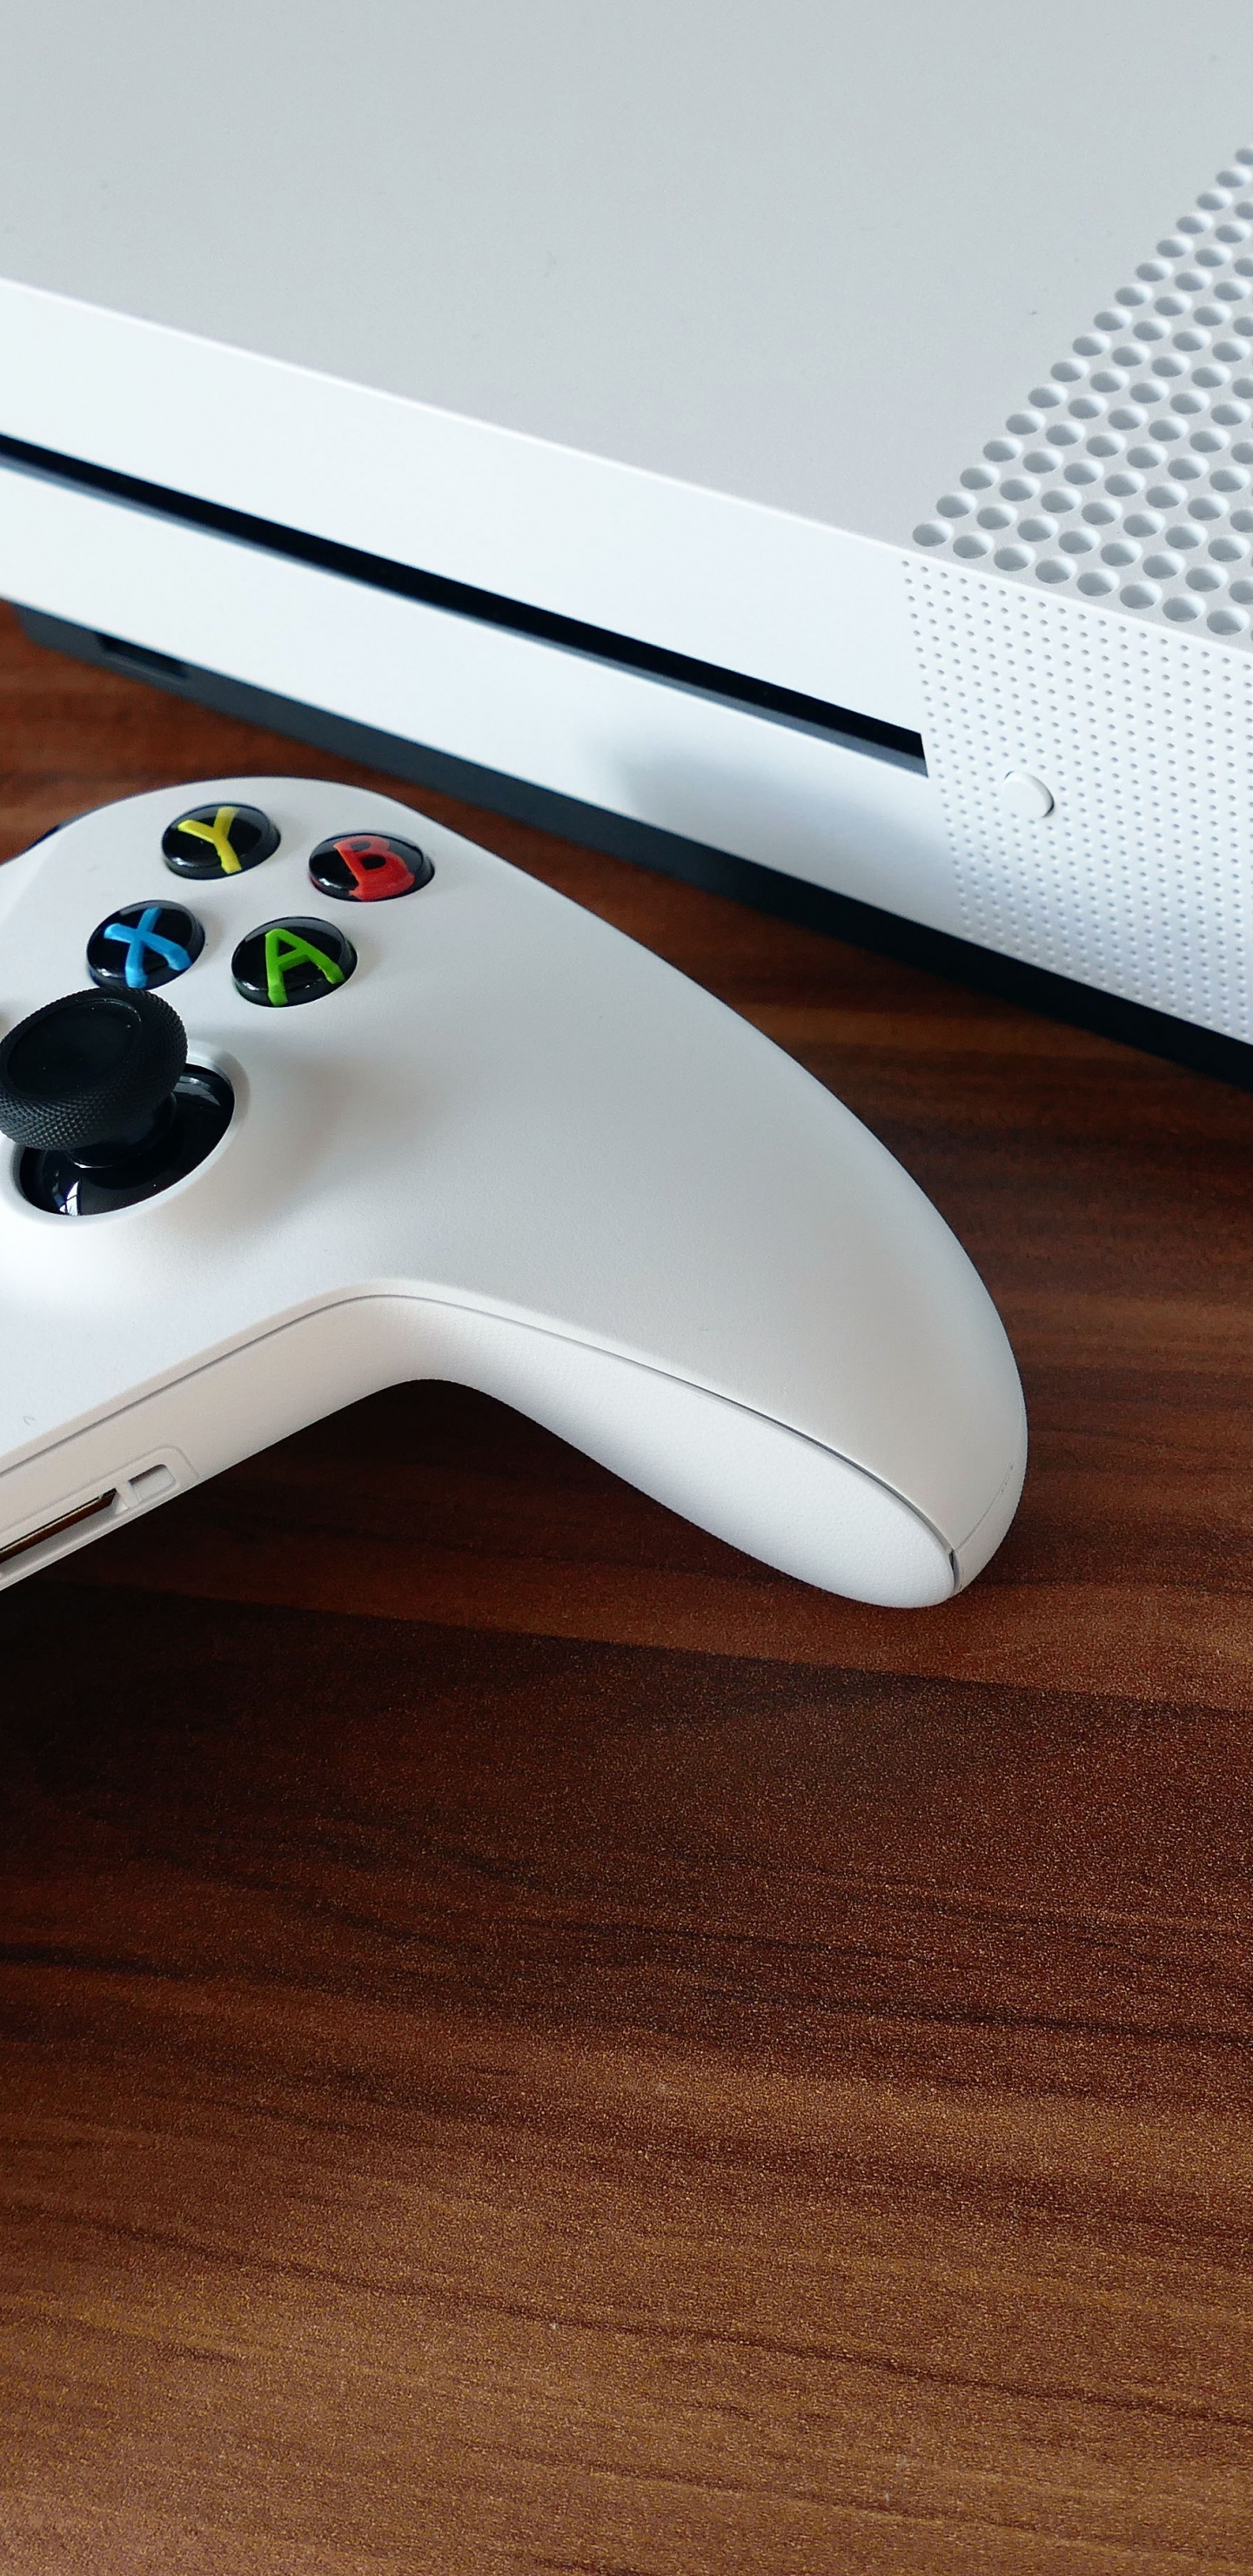 Consola Xbox One Blanca y Controlador de Juegos. Wallpaper in 1440x2960 Resolution